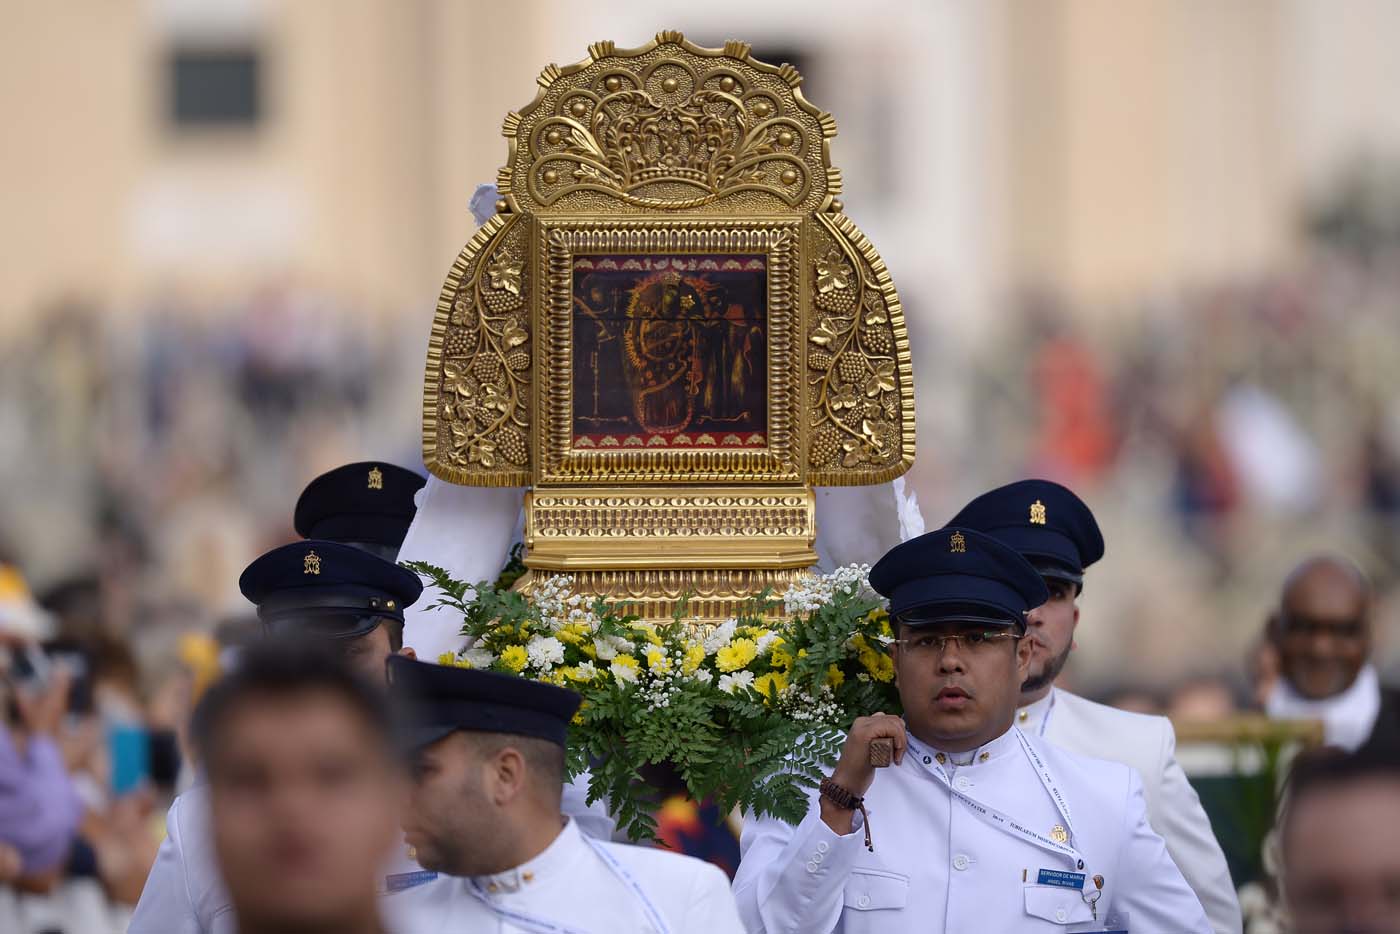 El Papa rezó el rosario ante réplicas de la Chinita y Divina Pastora en el Vaticano (fotos)